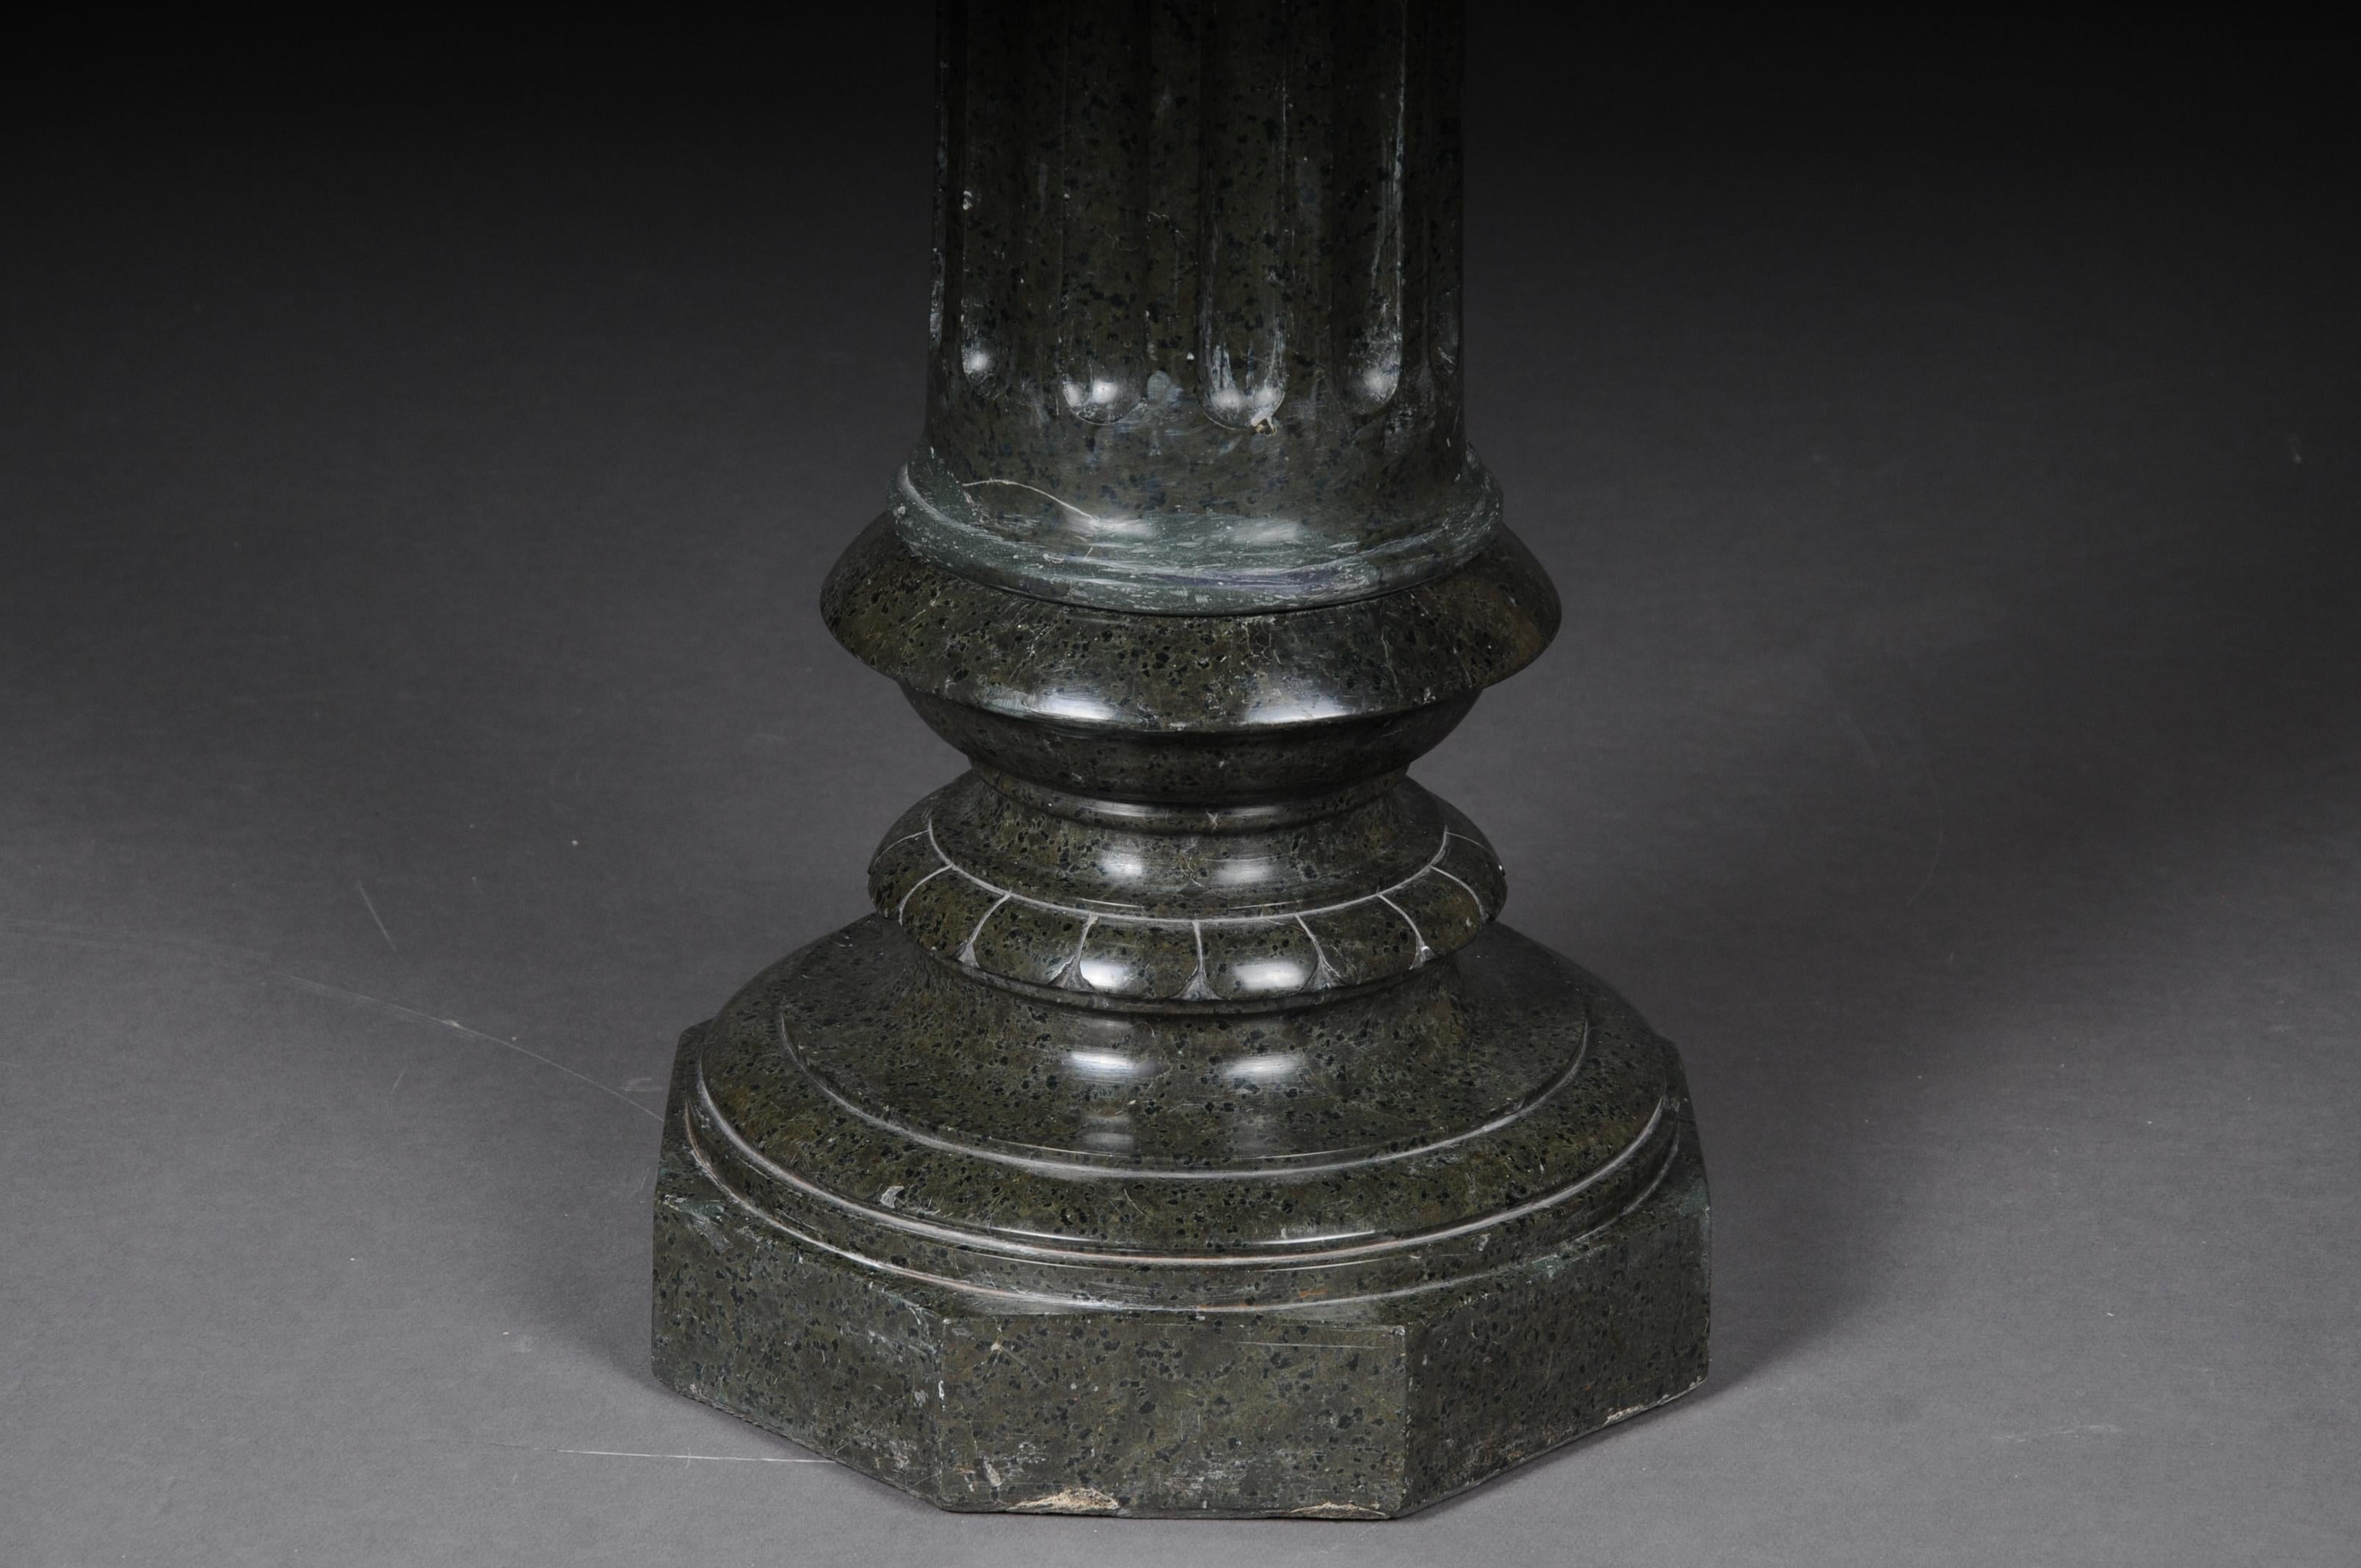 colonne classique en granit du 19ème siècle 
Serpentin noir-vert. Plaque inférieure et supérieure octogonale, tige cannelée. Traces d'âge et d'utilisation disponibles, vers le 19e siècle.

(K - 35).